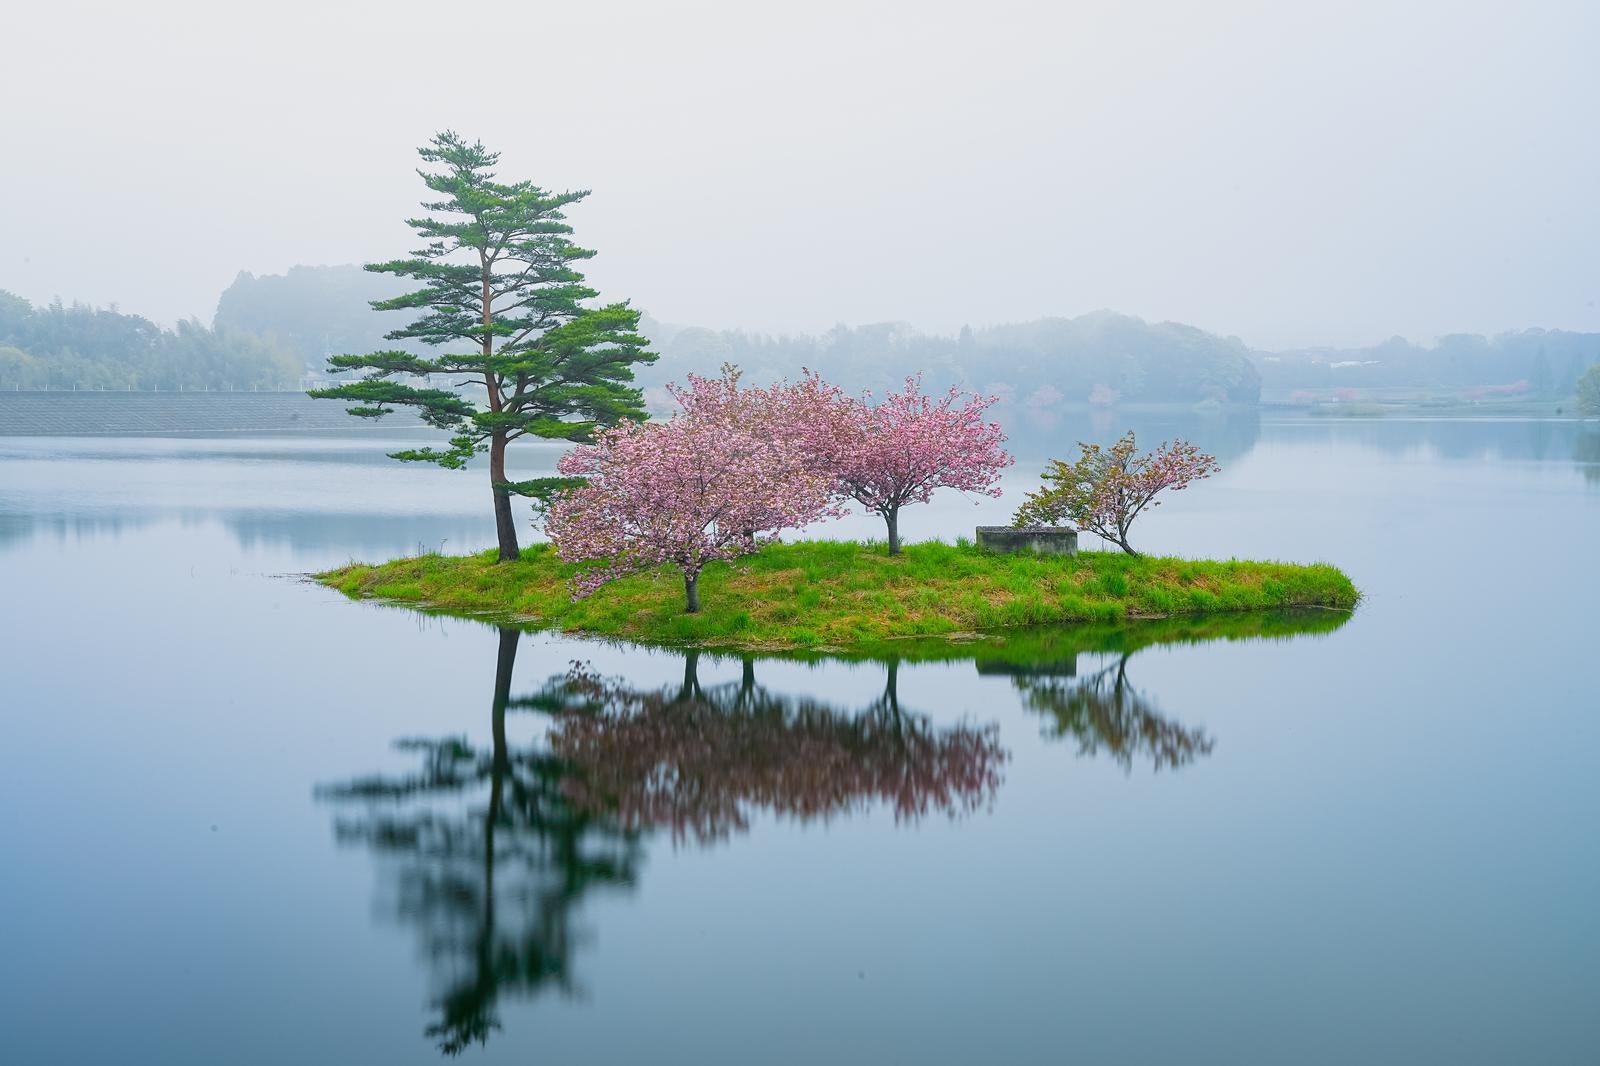 「日野川ダム湖に浮かぶ桜の木々」の写真